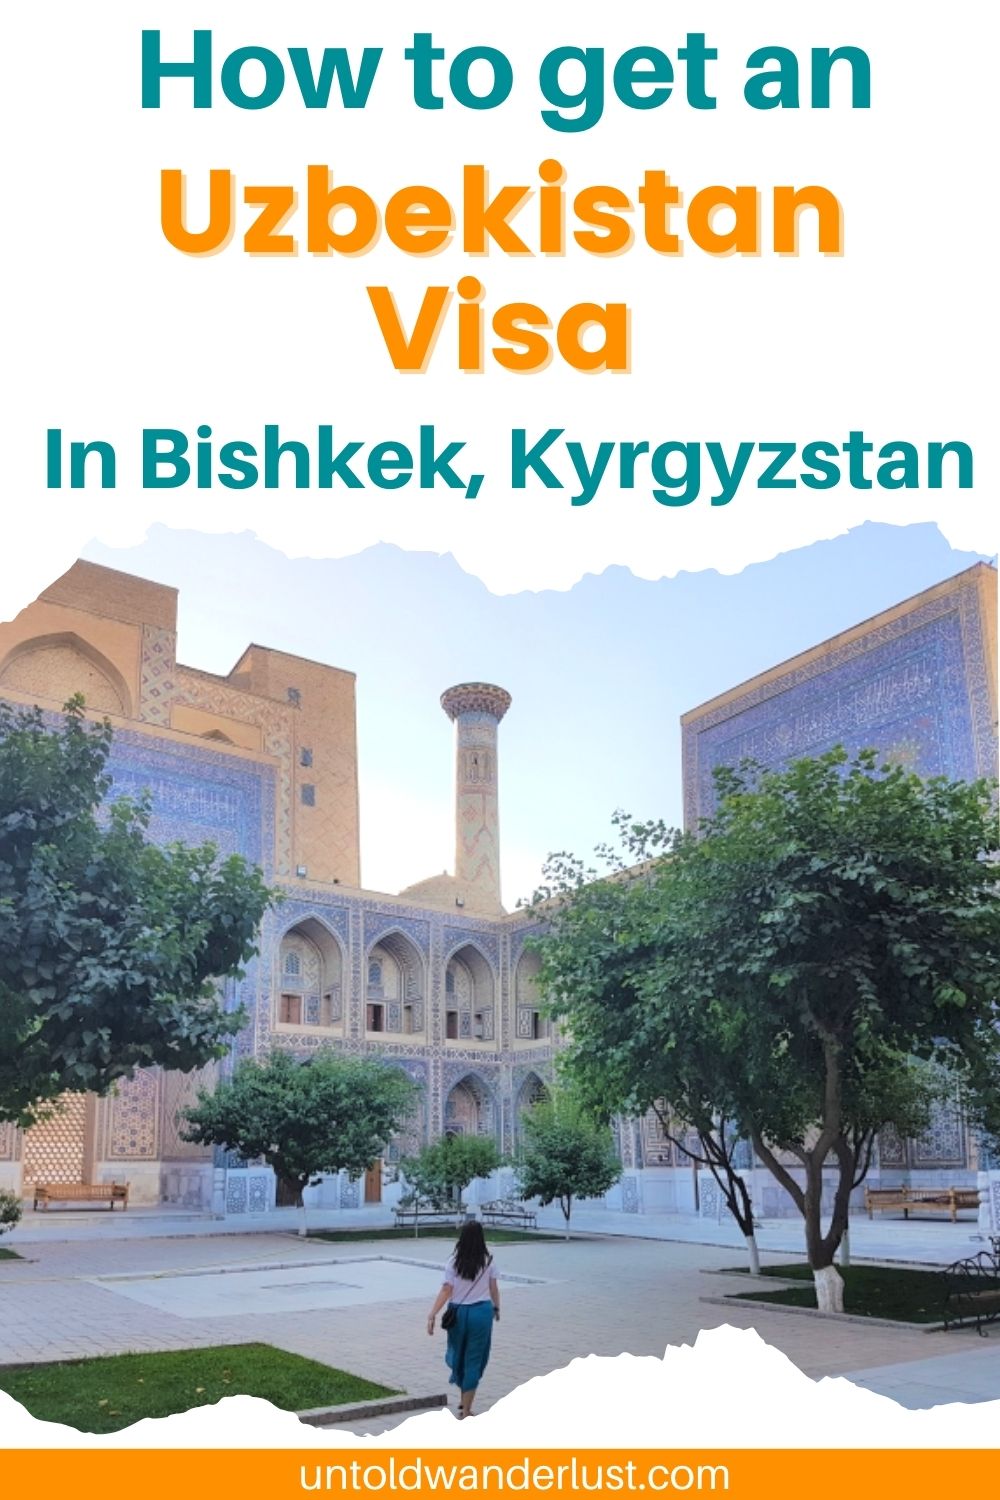 How to get an Uzbekistan Visa in Bishkek, Kyrgyzstan